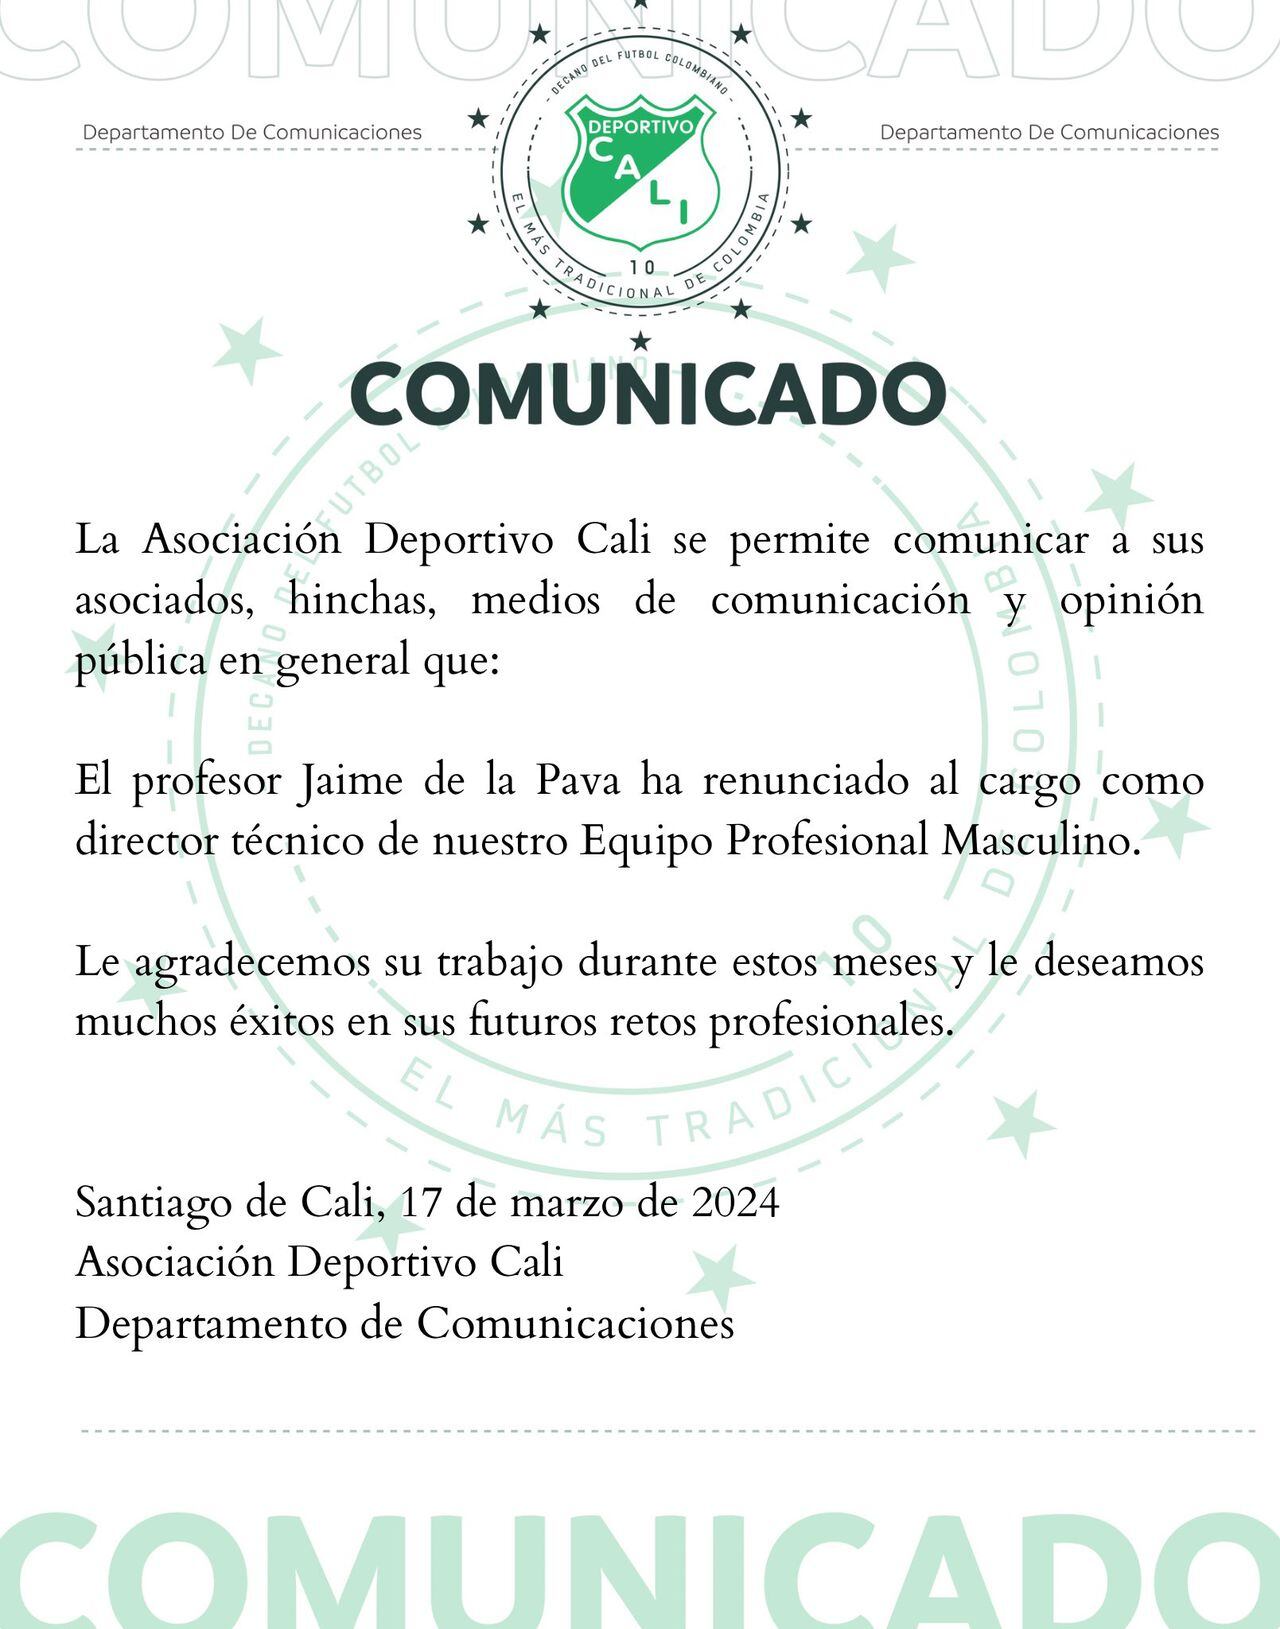 Comunicado oficial del Deportivo Cali anunciando la salida de Jaime de la Pava.